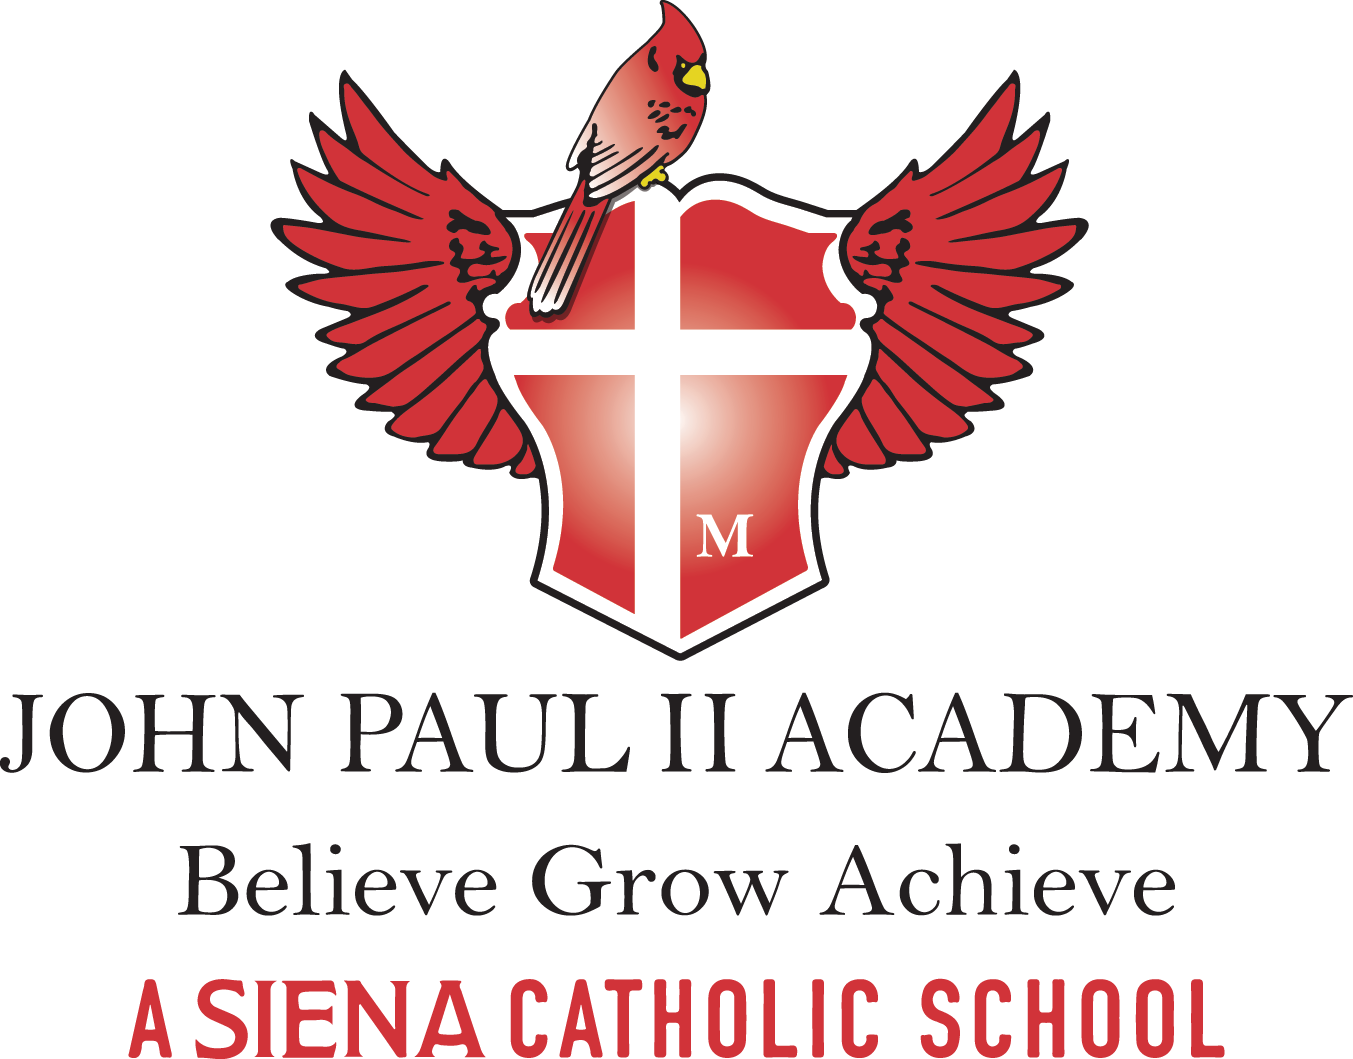 John Paul II Academy